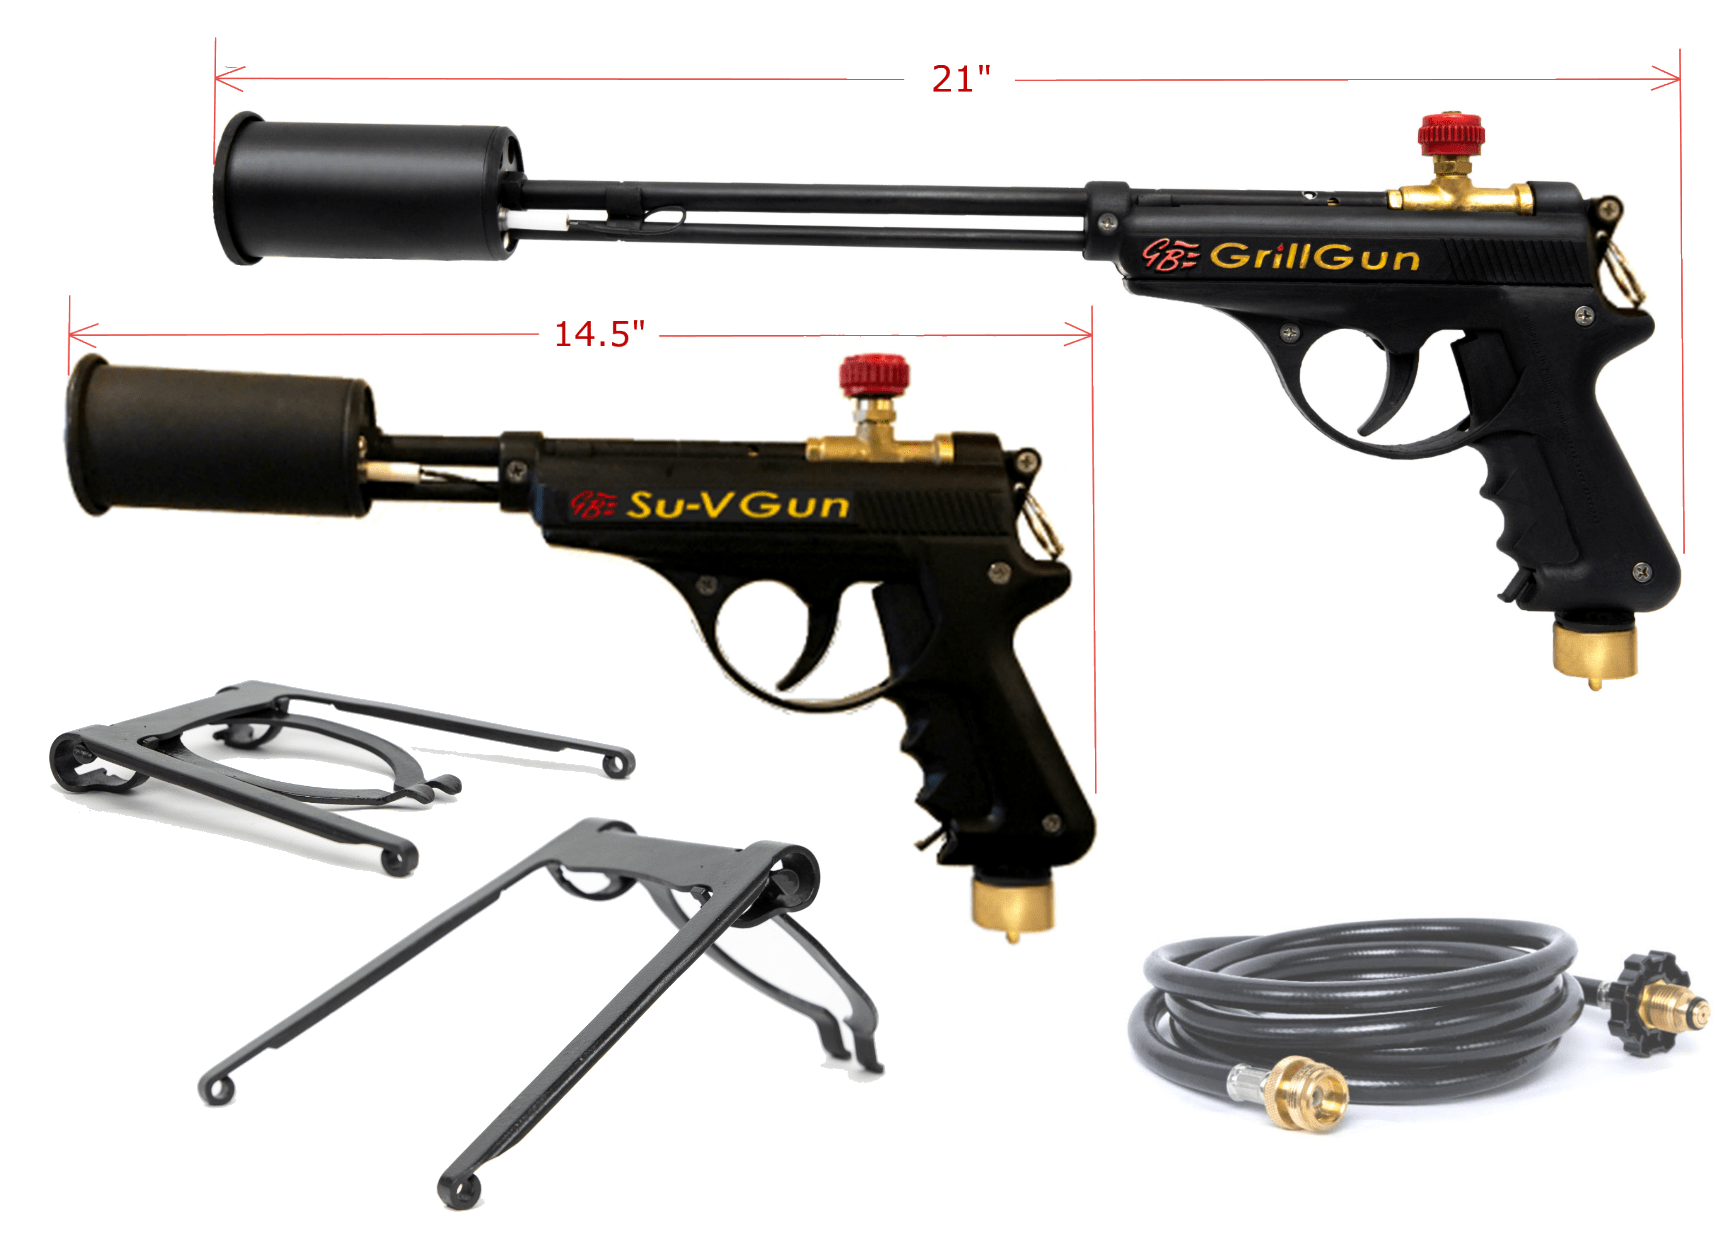 GrillBlazer Su-VGun 14.5 Grill Gun